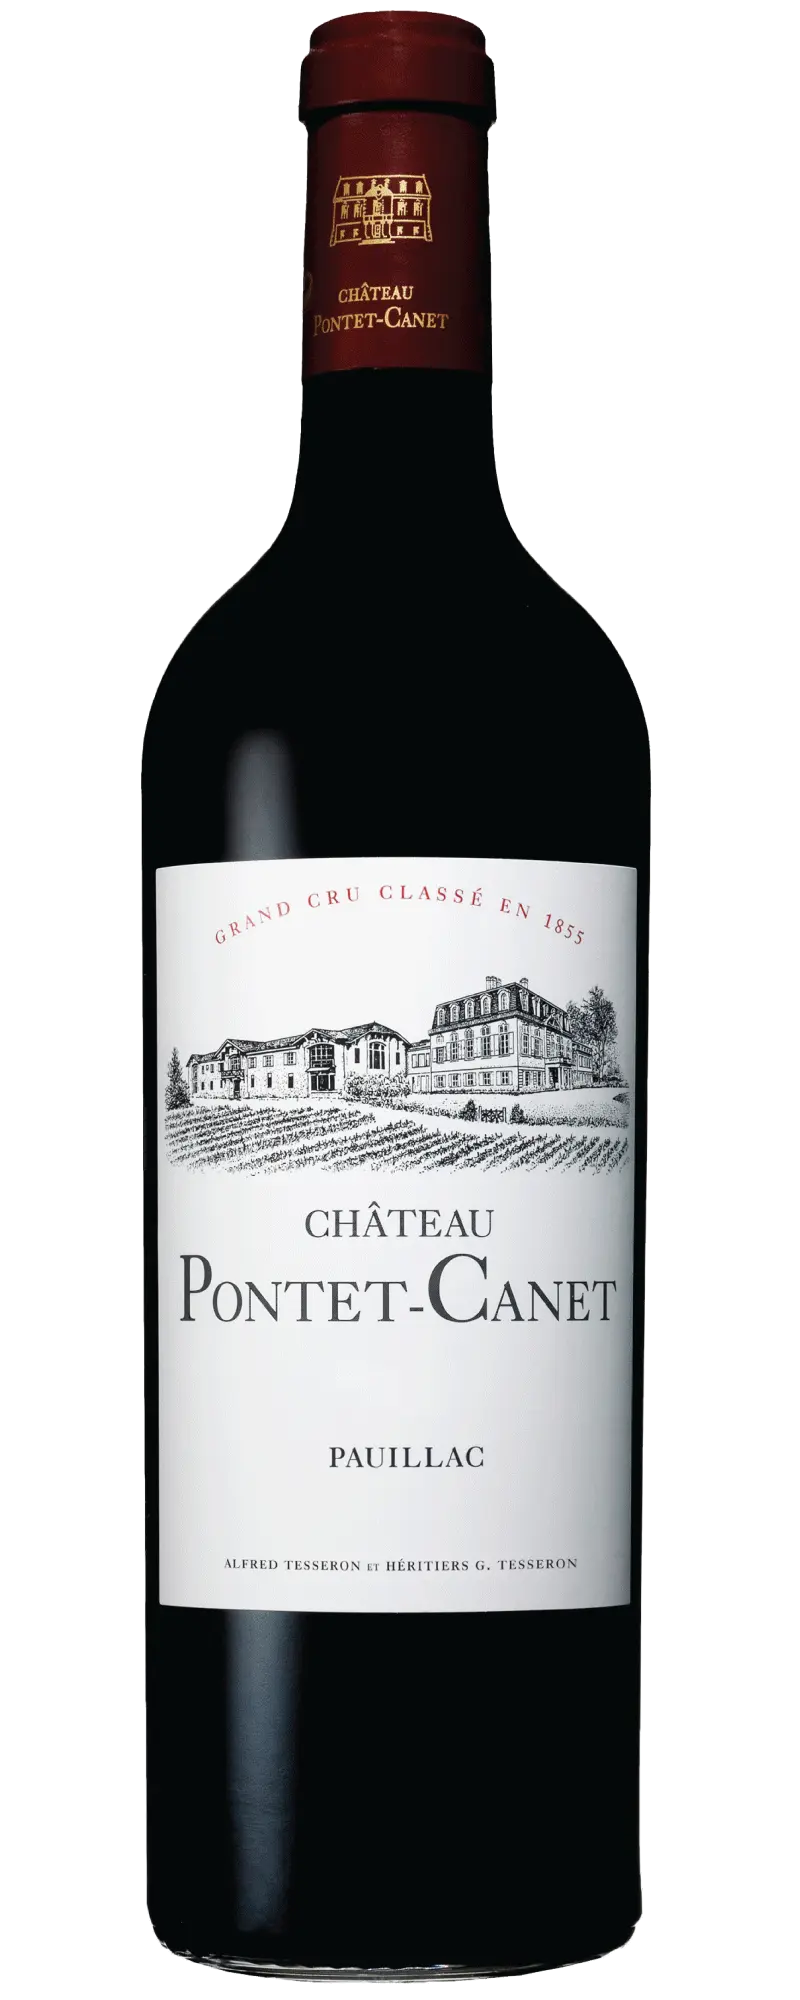 Chateau Pontet Canet 2011 (1x75cl) - TwoMoreGlasses.com